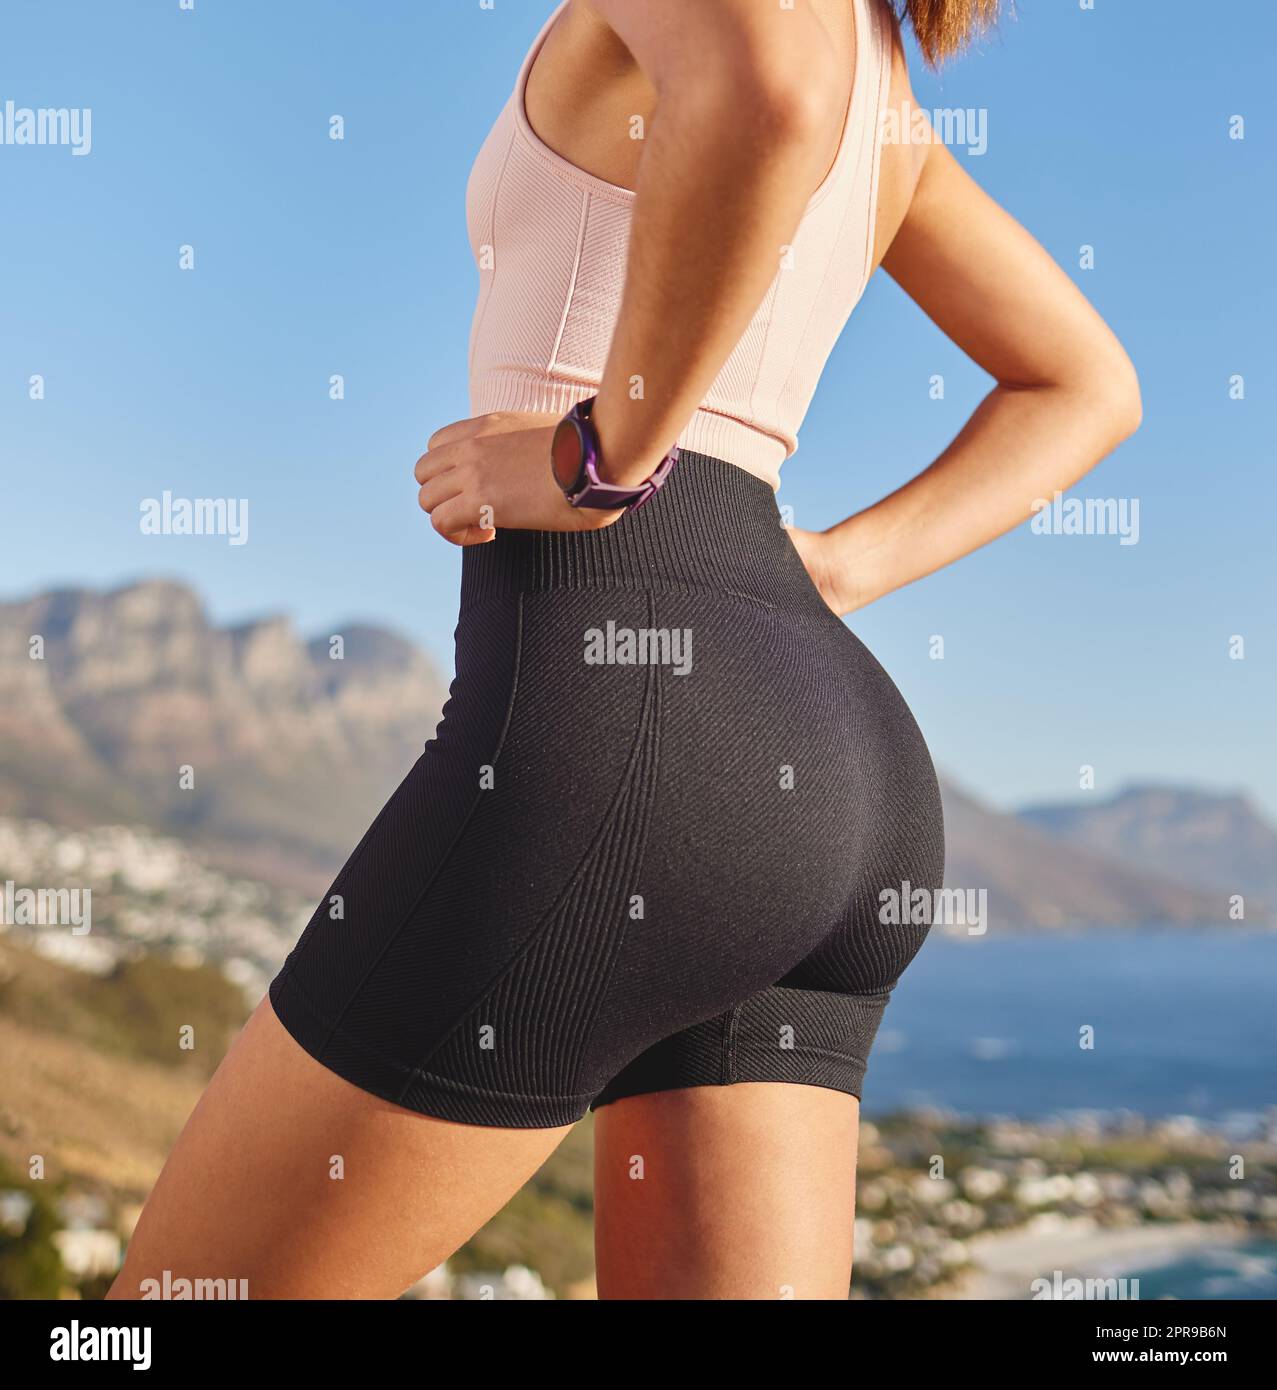 Pantaloncini da corsa immagini e fotografie stock ad alta risoluzione -  Alamy